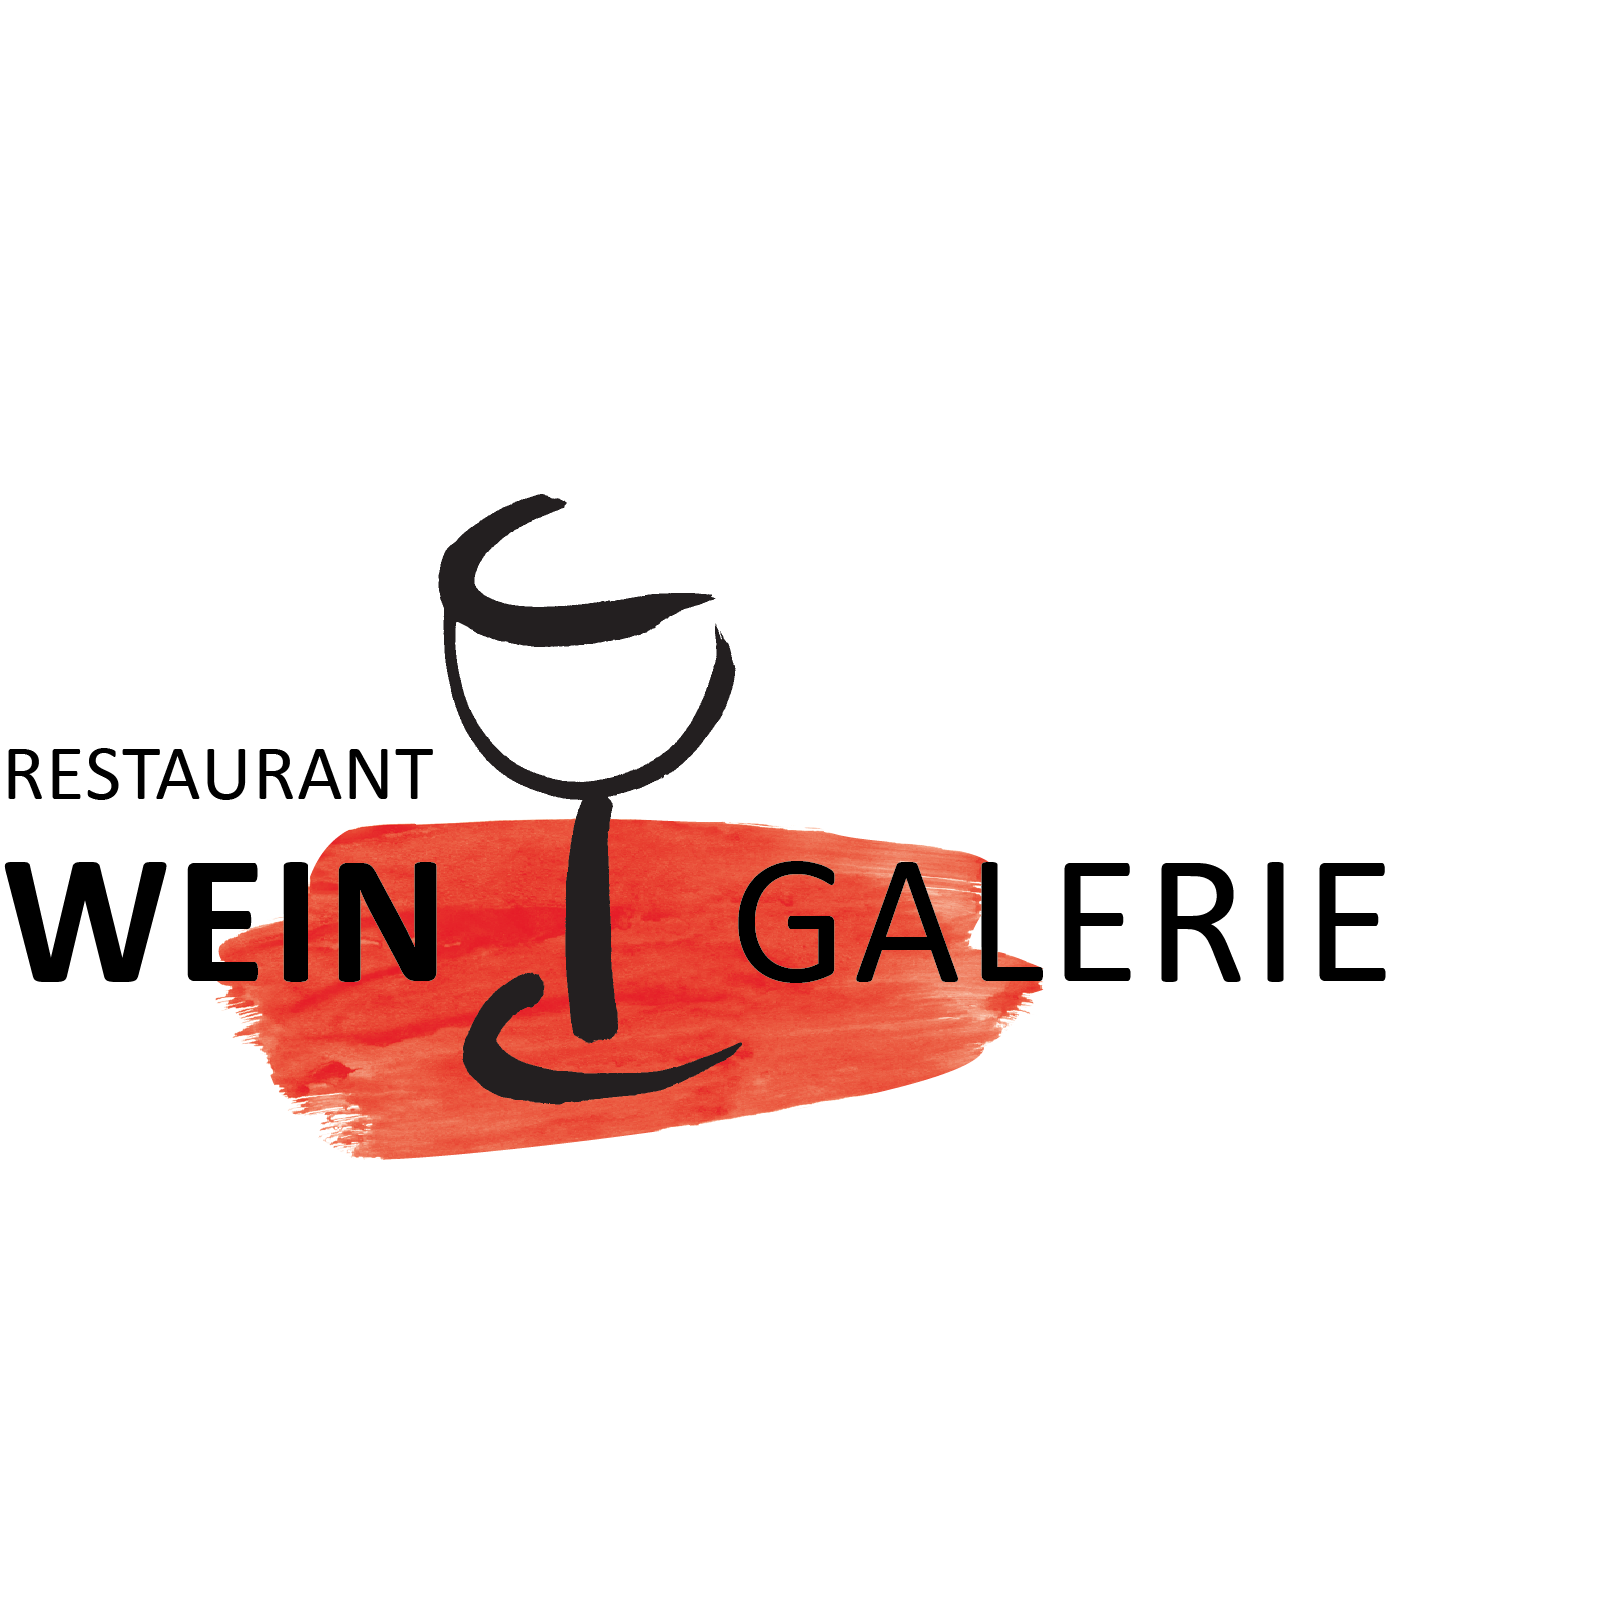 Weingalerie in Pulheim - Logo